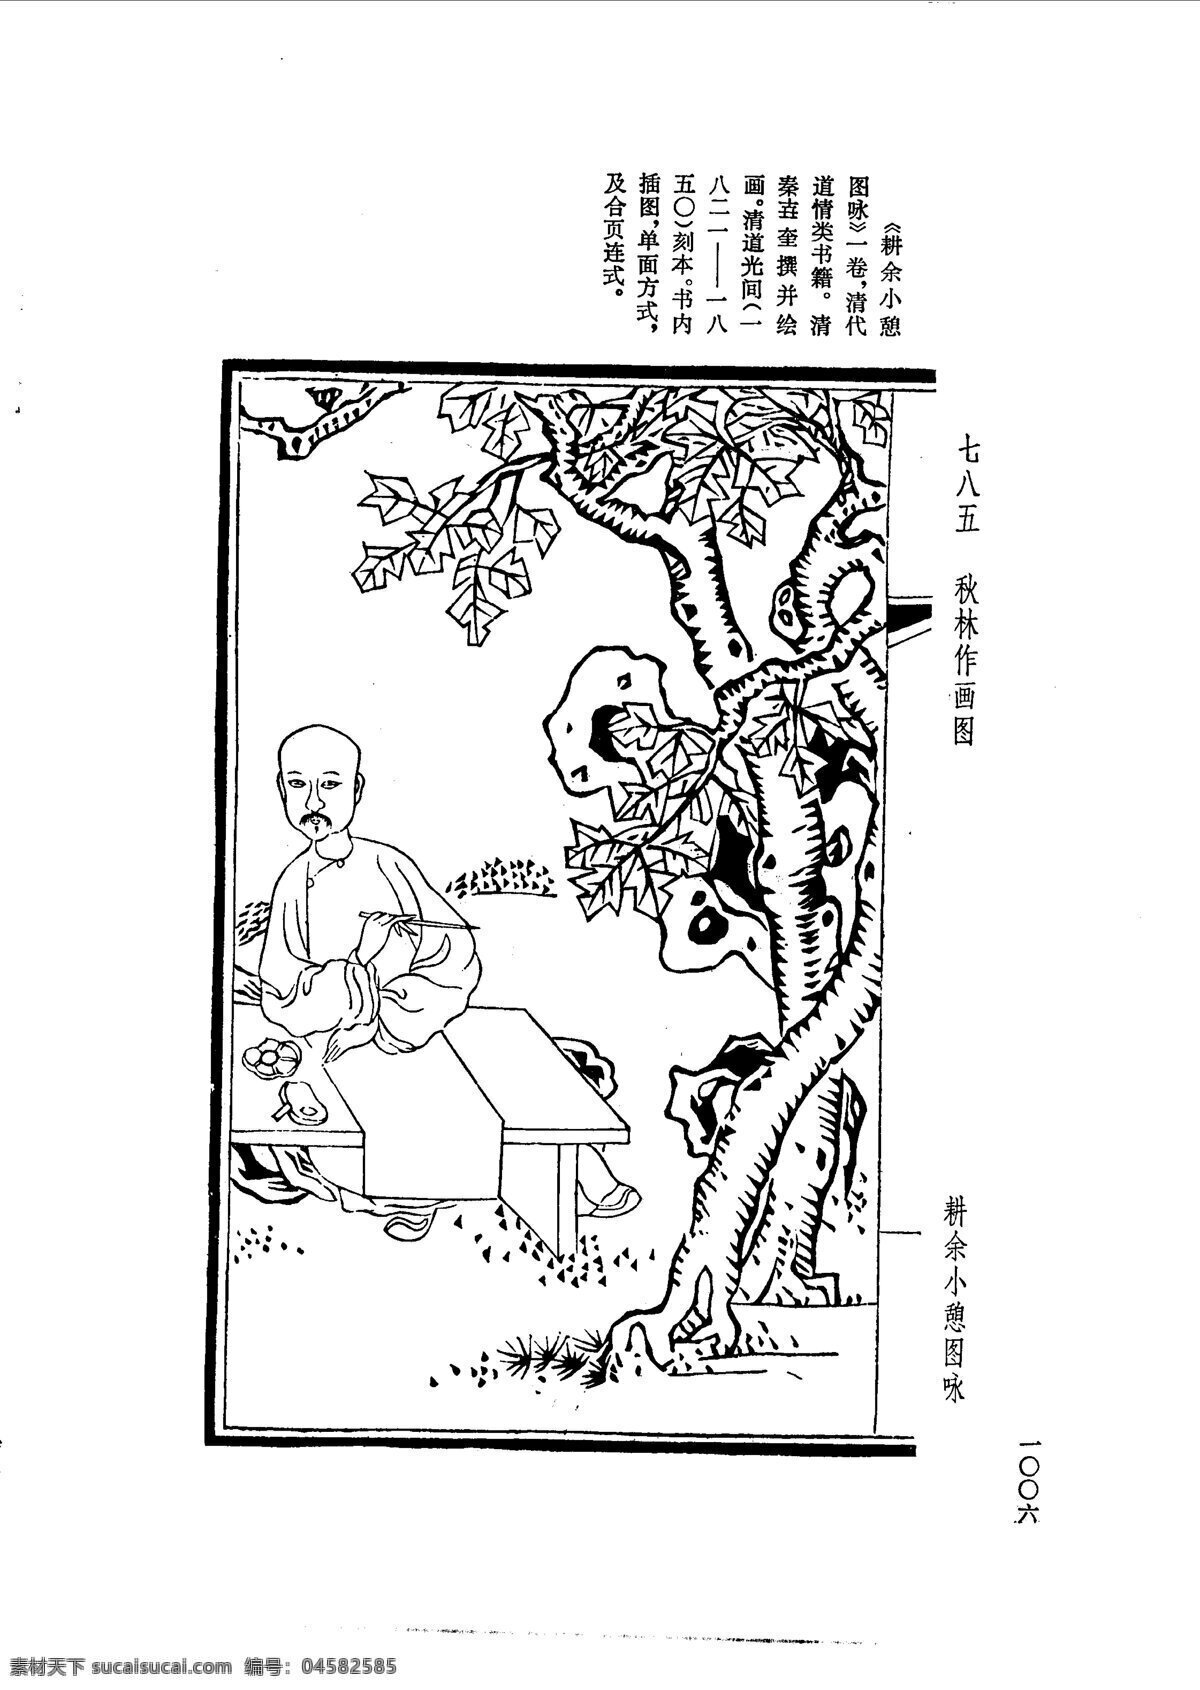 中国 古典文学 版画 选集 上 下册1034 设计素材 版画世界 书画美术 白色